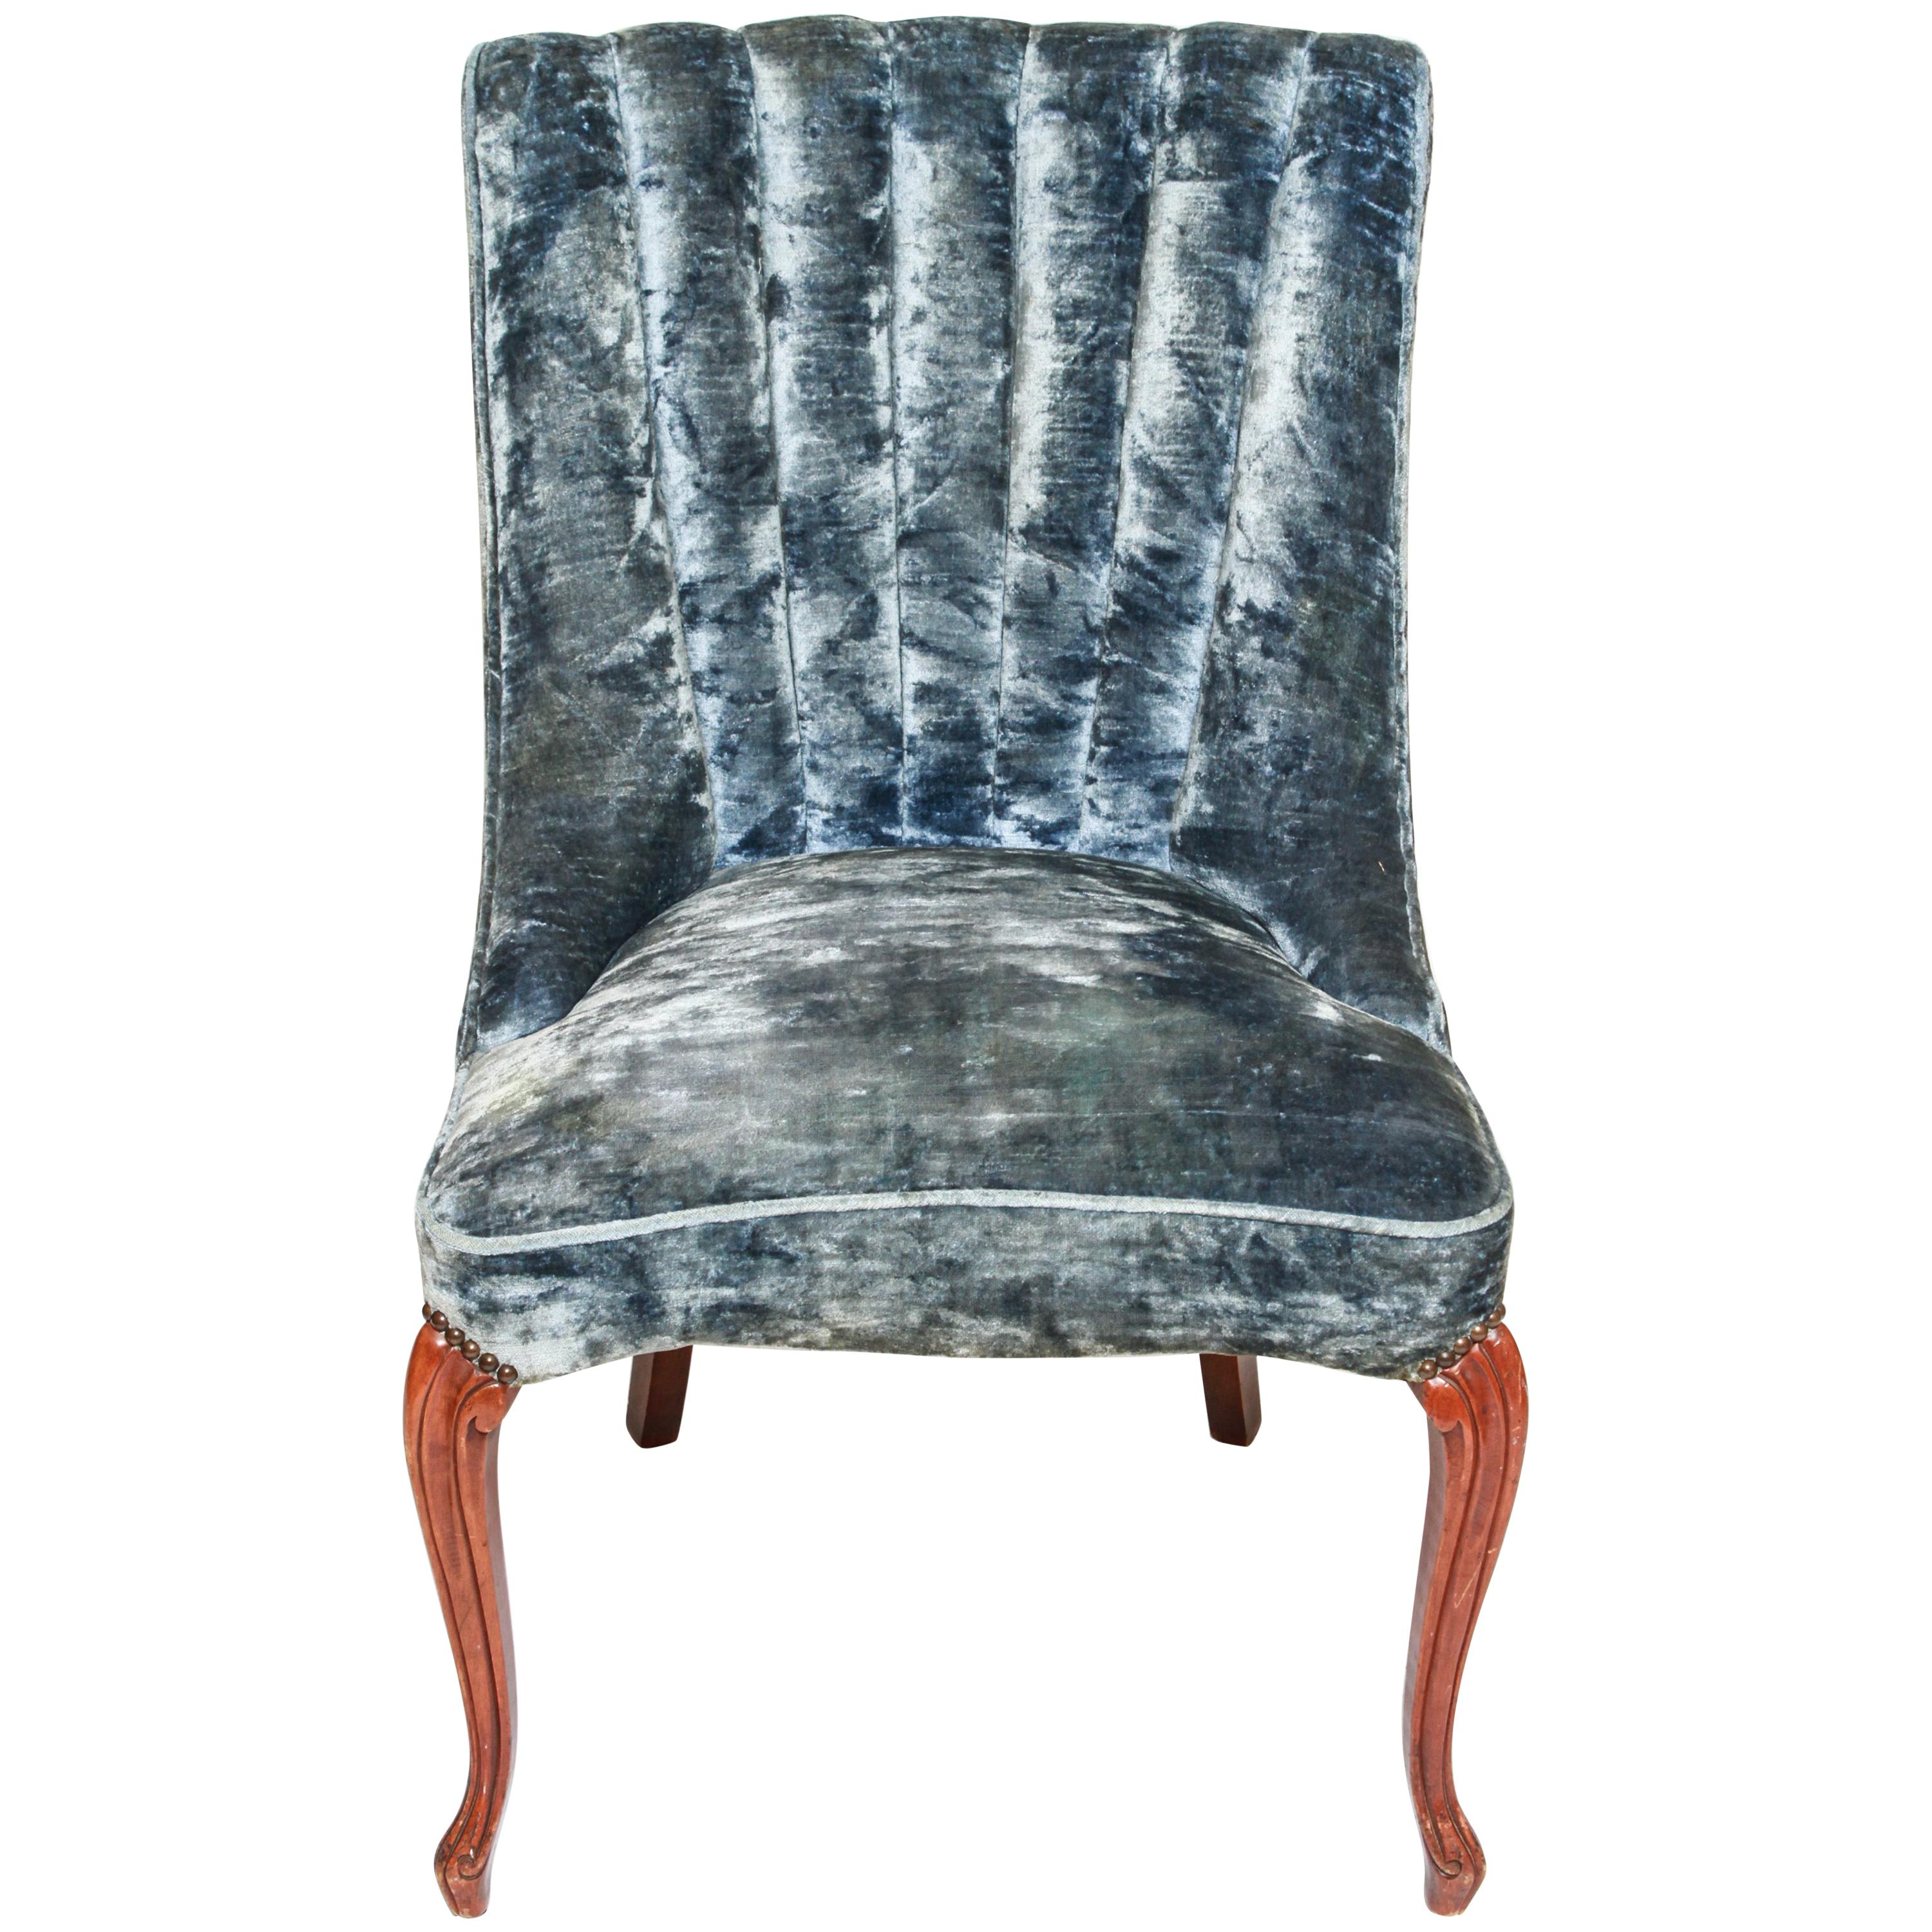 Art Deco Channel-Back Side Chair in Blue Velvet